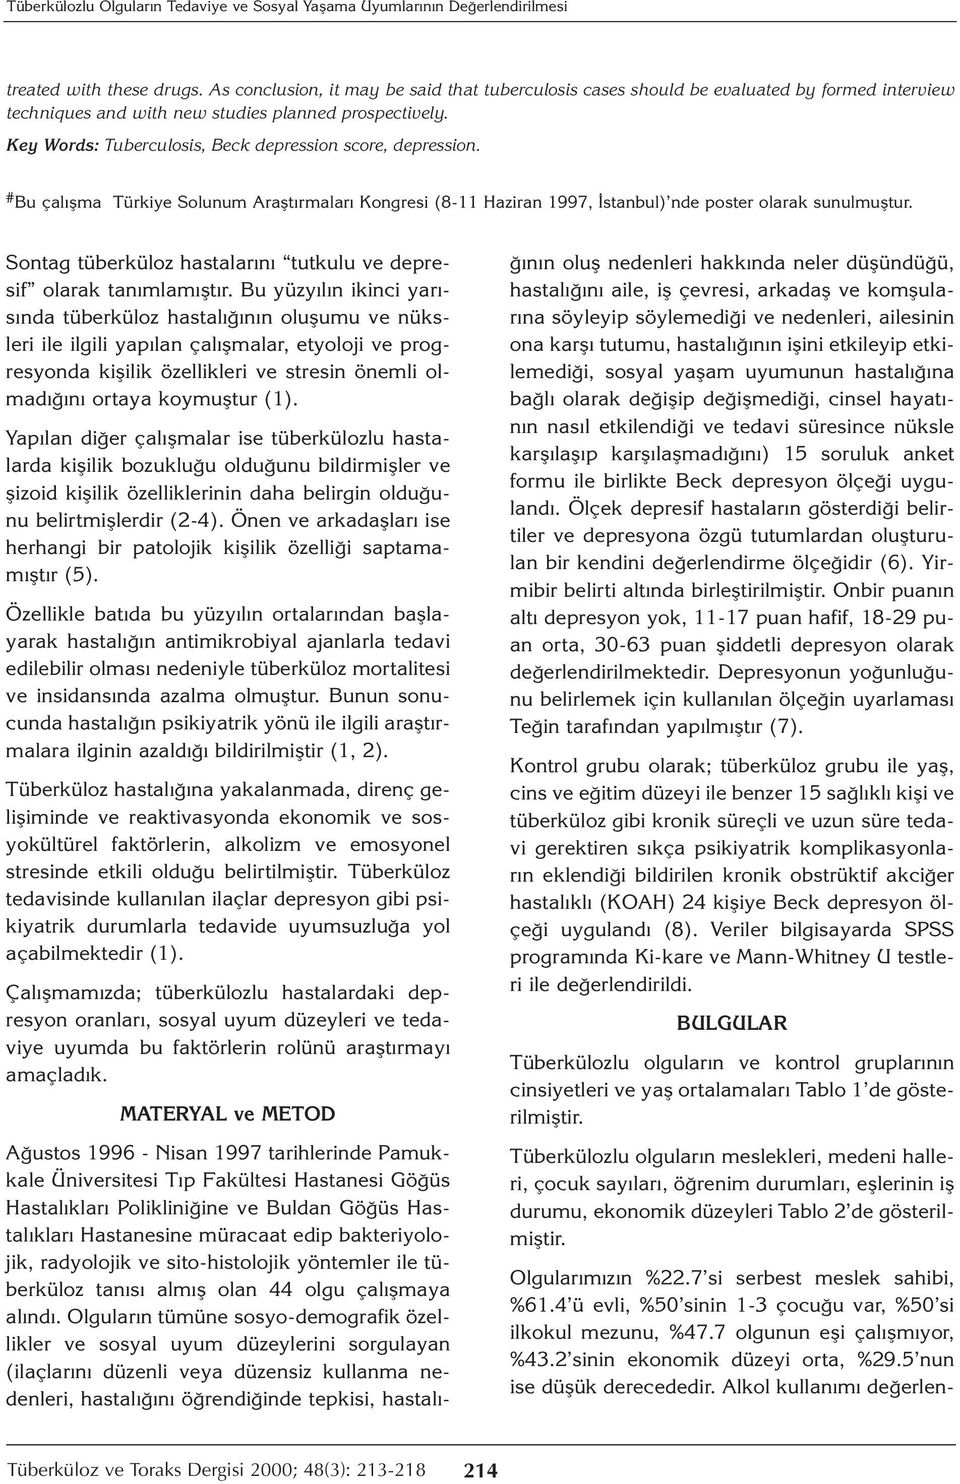 Key Words: Tuberculosis, Beck depression score, depression. # Bu çalışma Türkiye Solunum Araştırmaları Kongresi (8-11 Haziran 1997, İstanbul) nde poster olarak sunulmuştur.